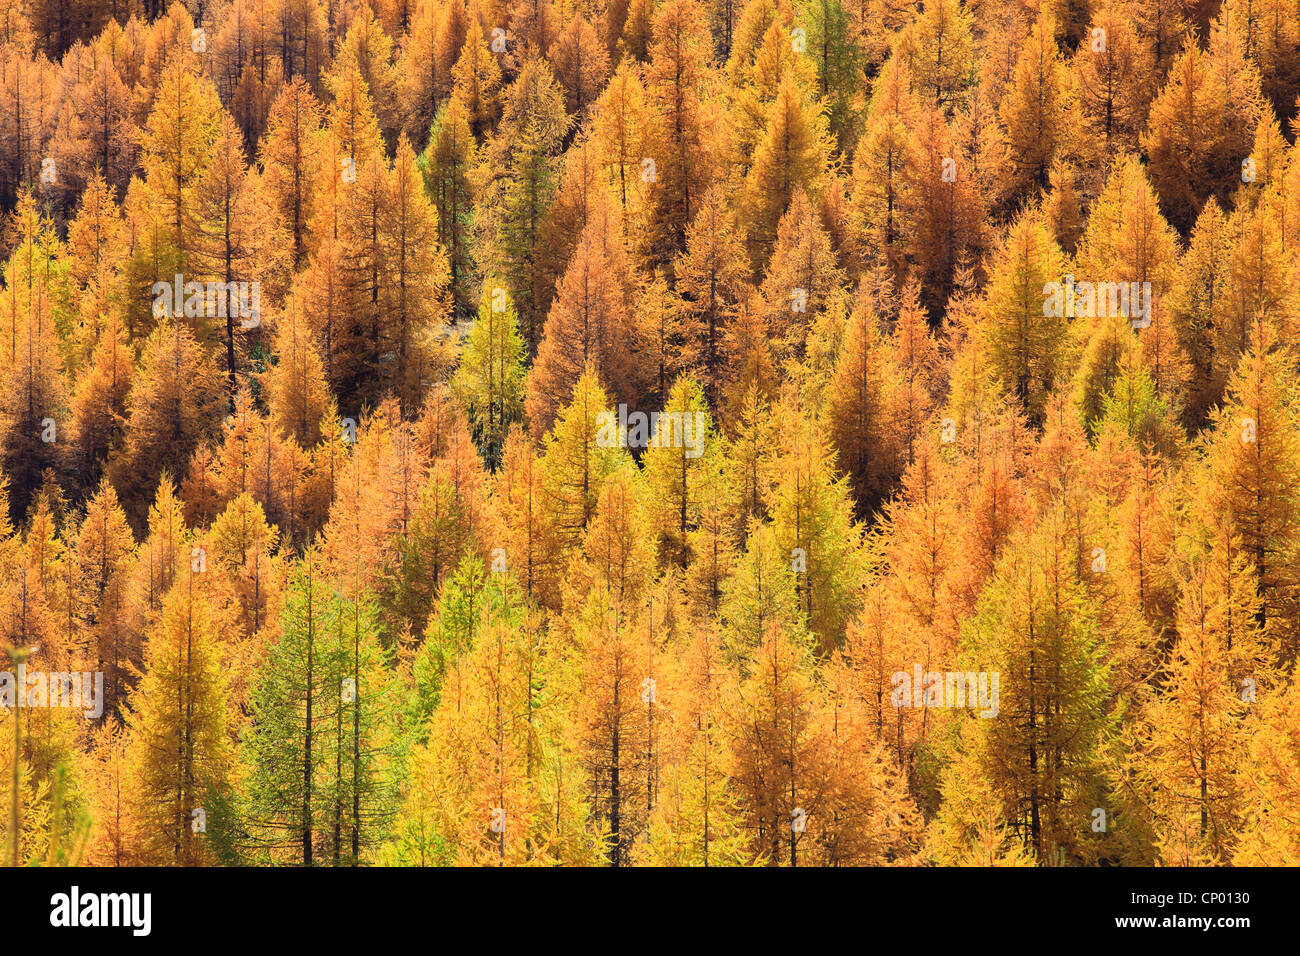 Le mélèze commun européen, mélèze (Larix decidua, Larix europaea), bois de mélèze en automne, la Suisse, Valais Banque D'Images